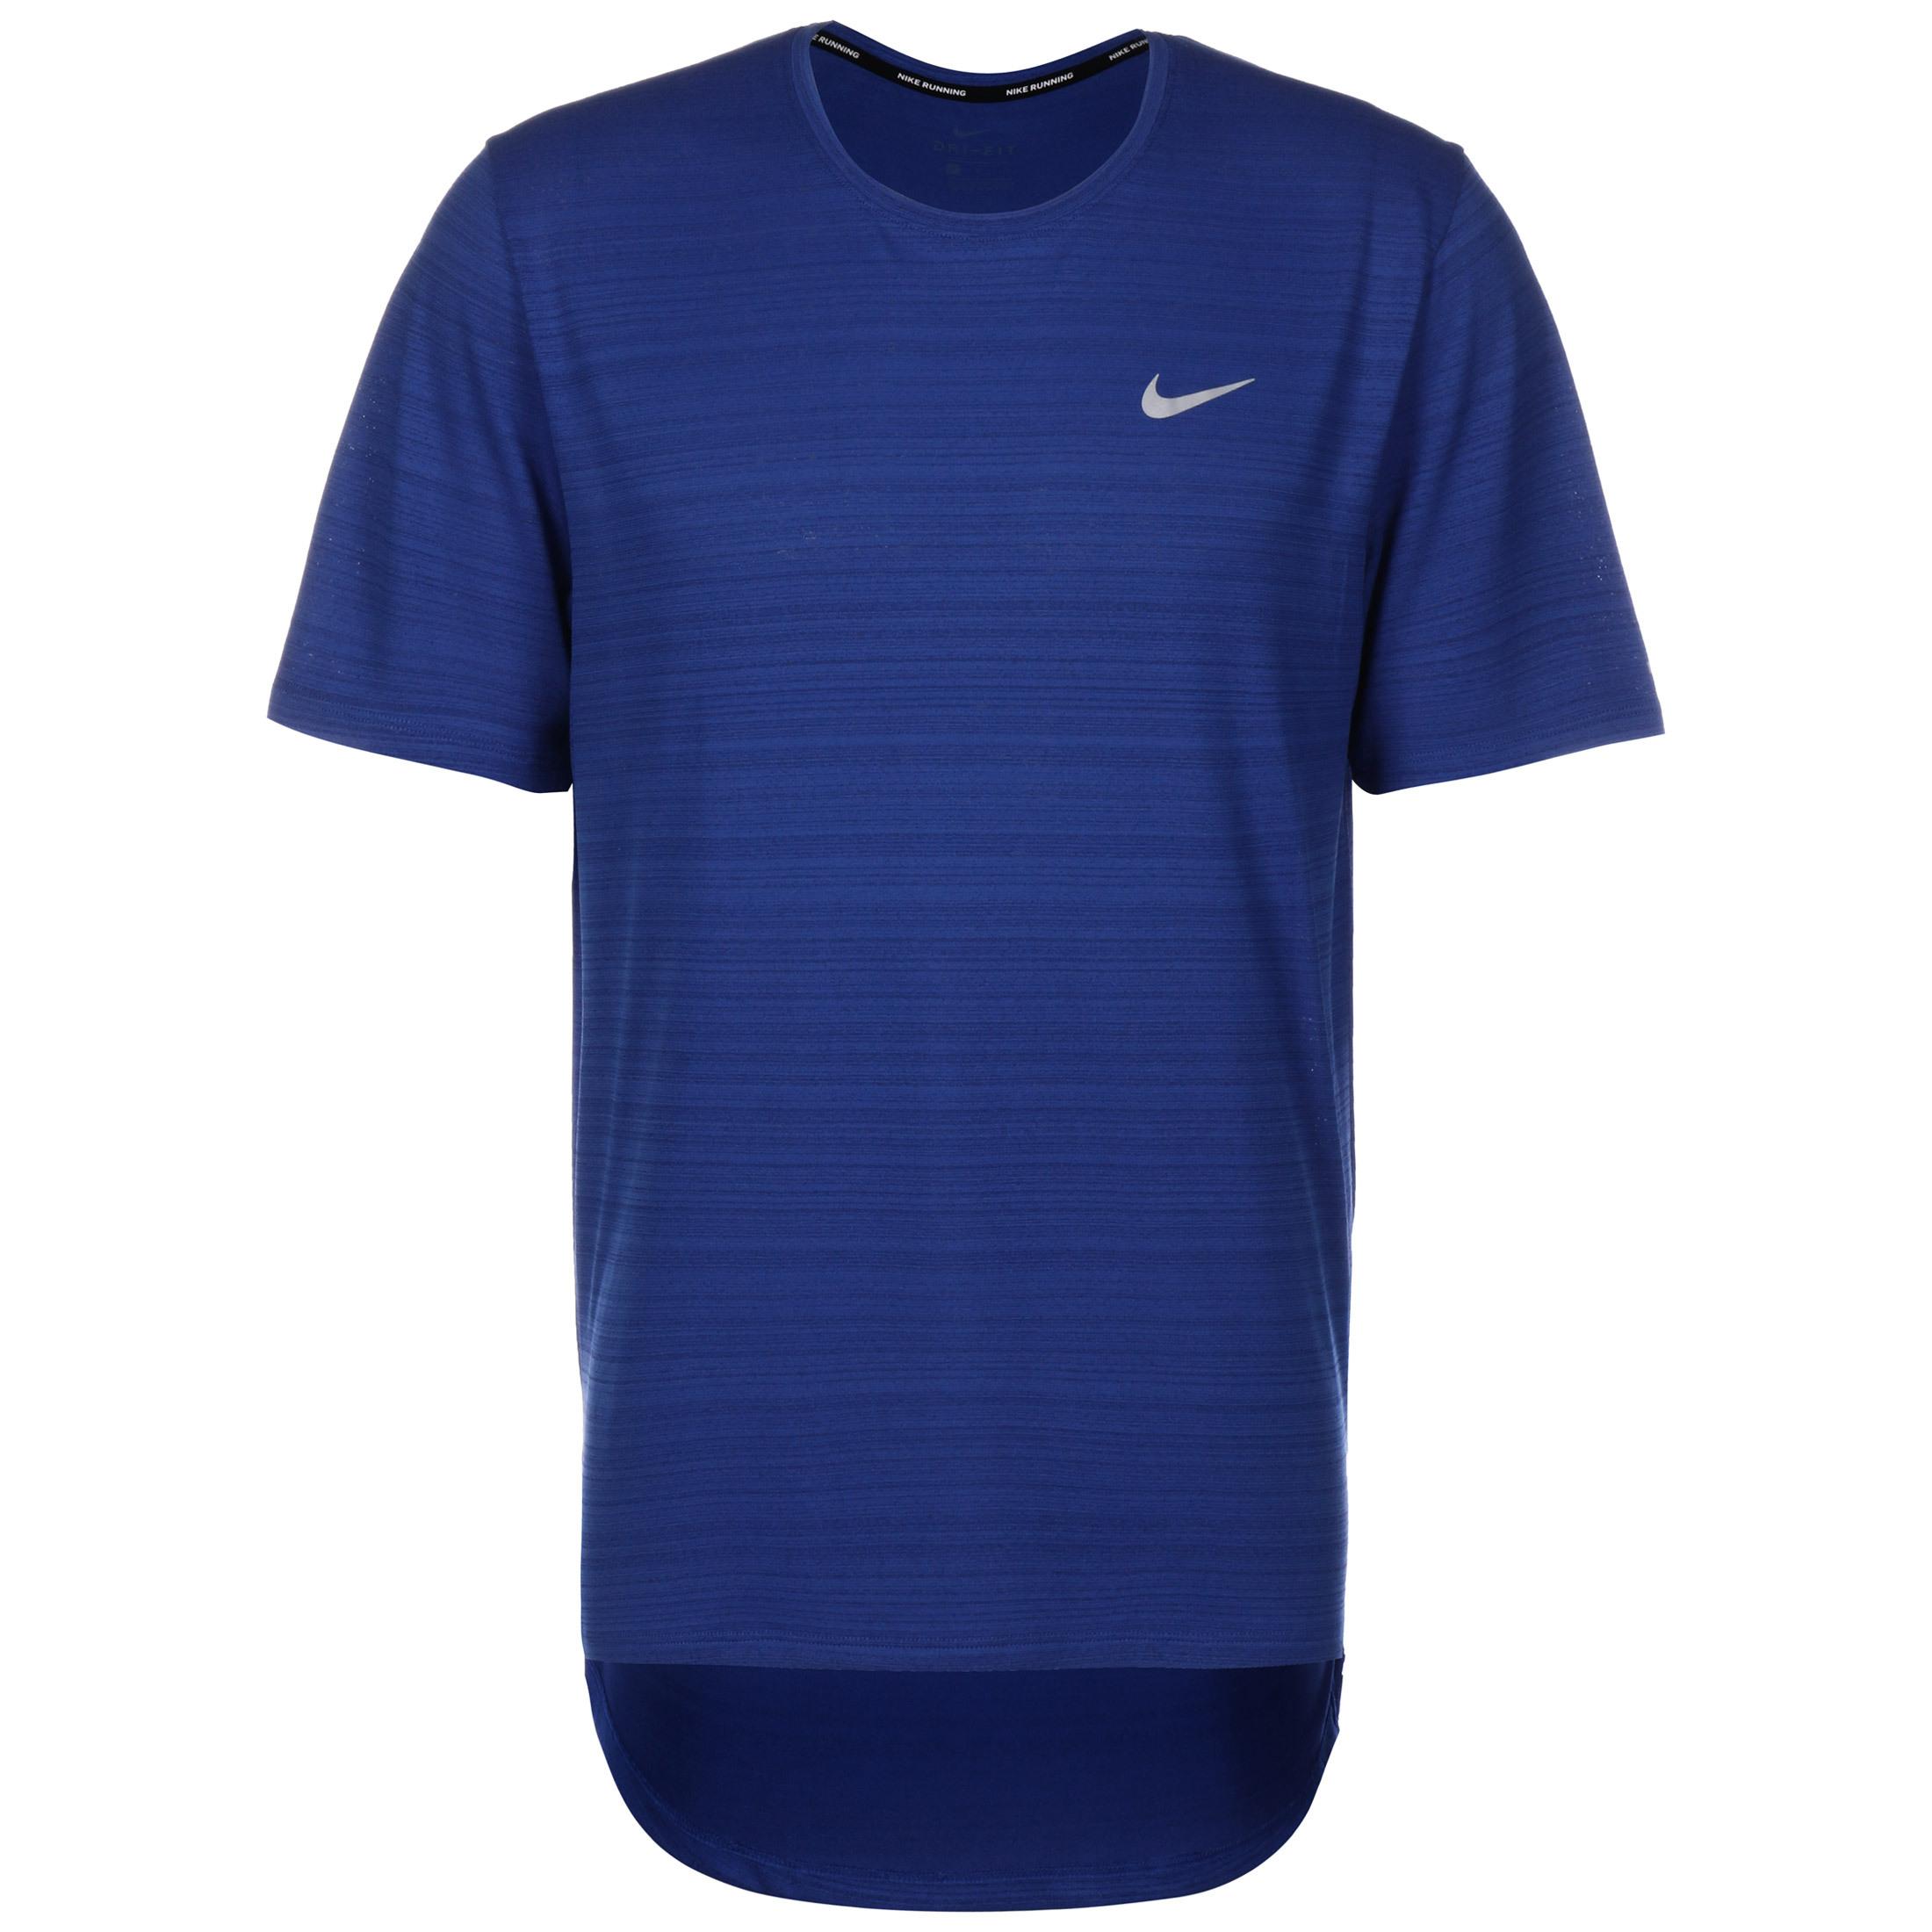 bequem bei online SportScheck Nike Shirts bestellen